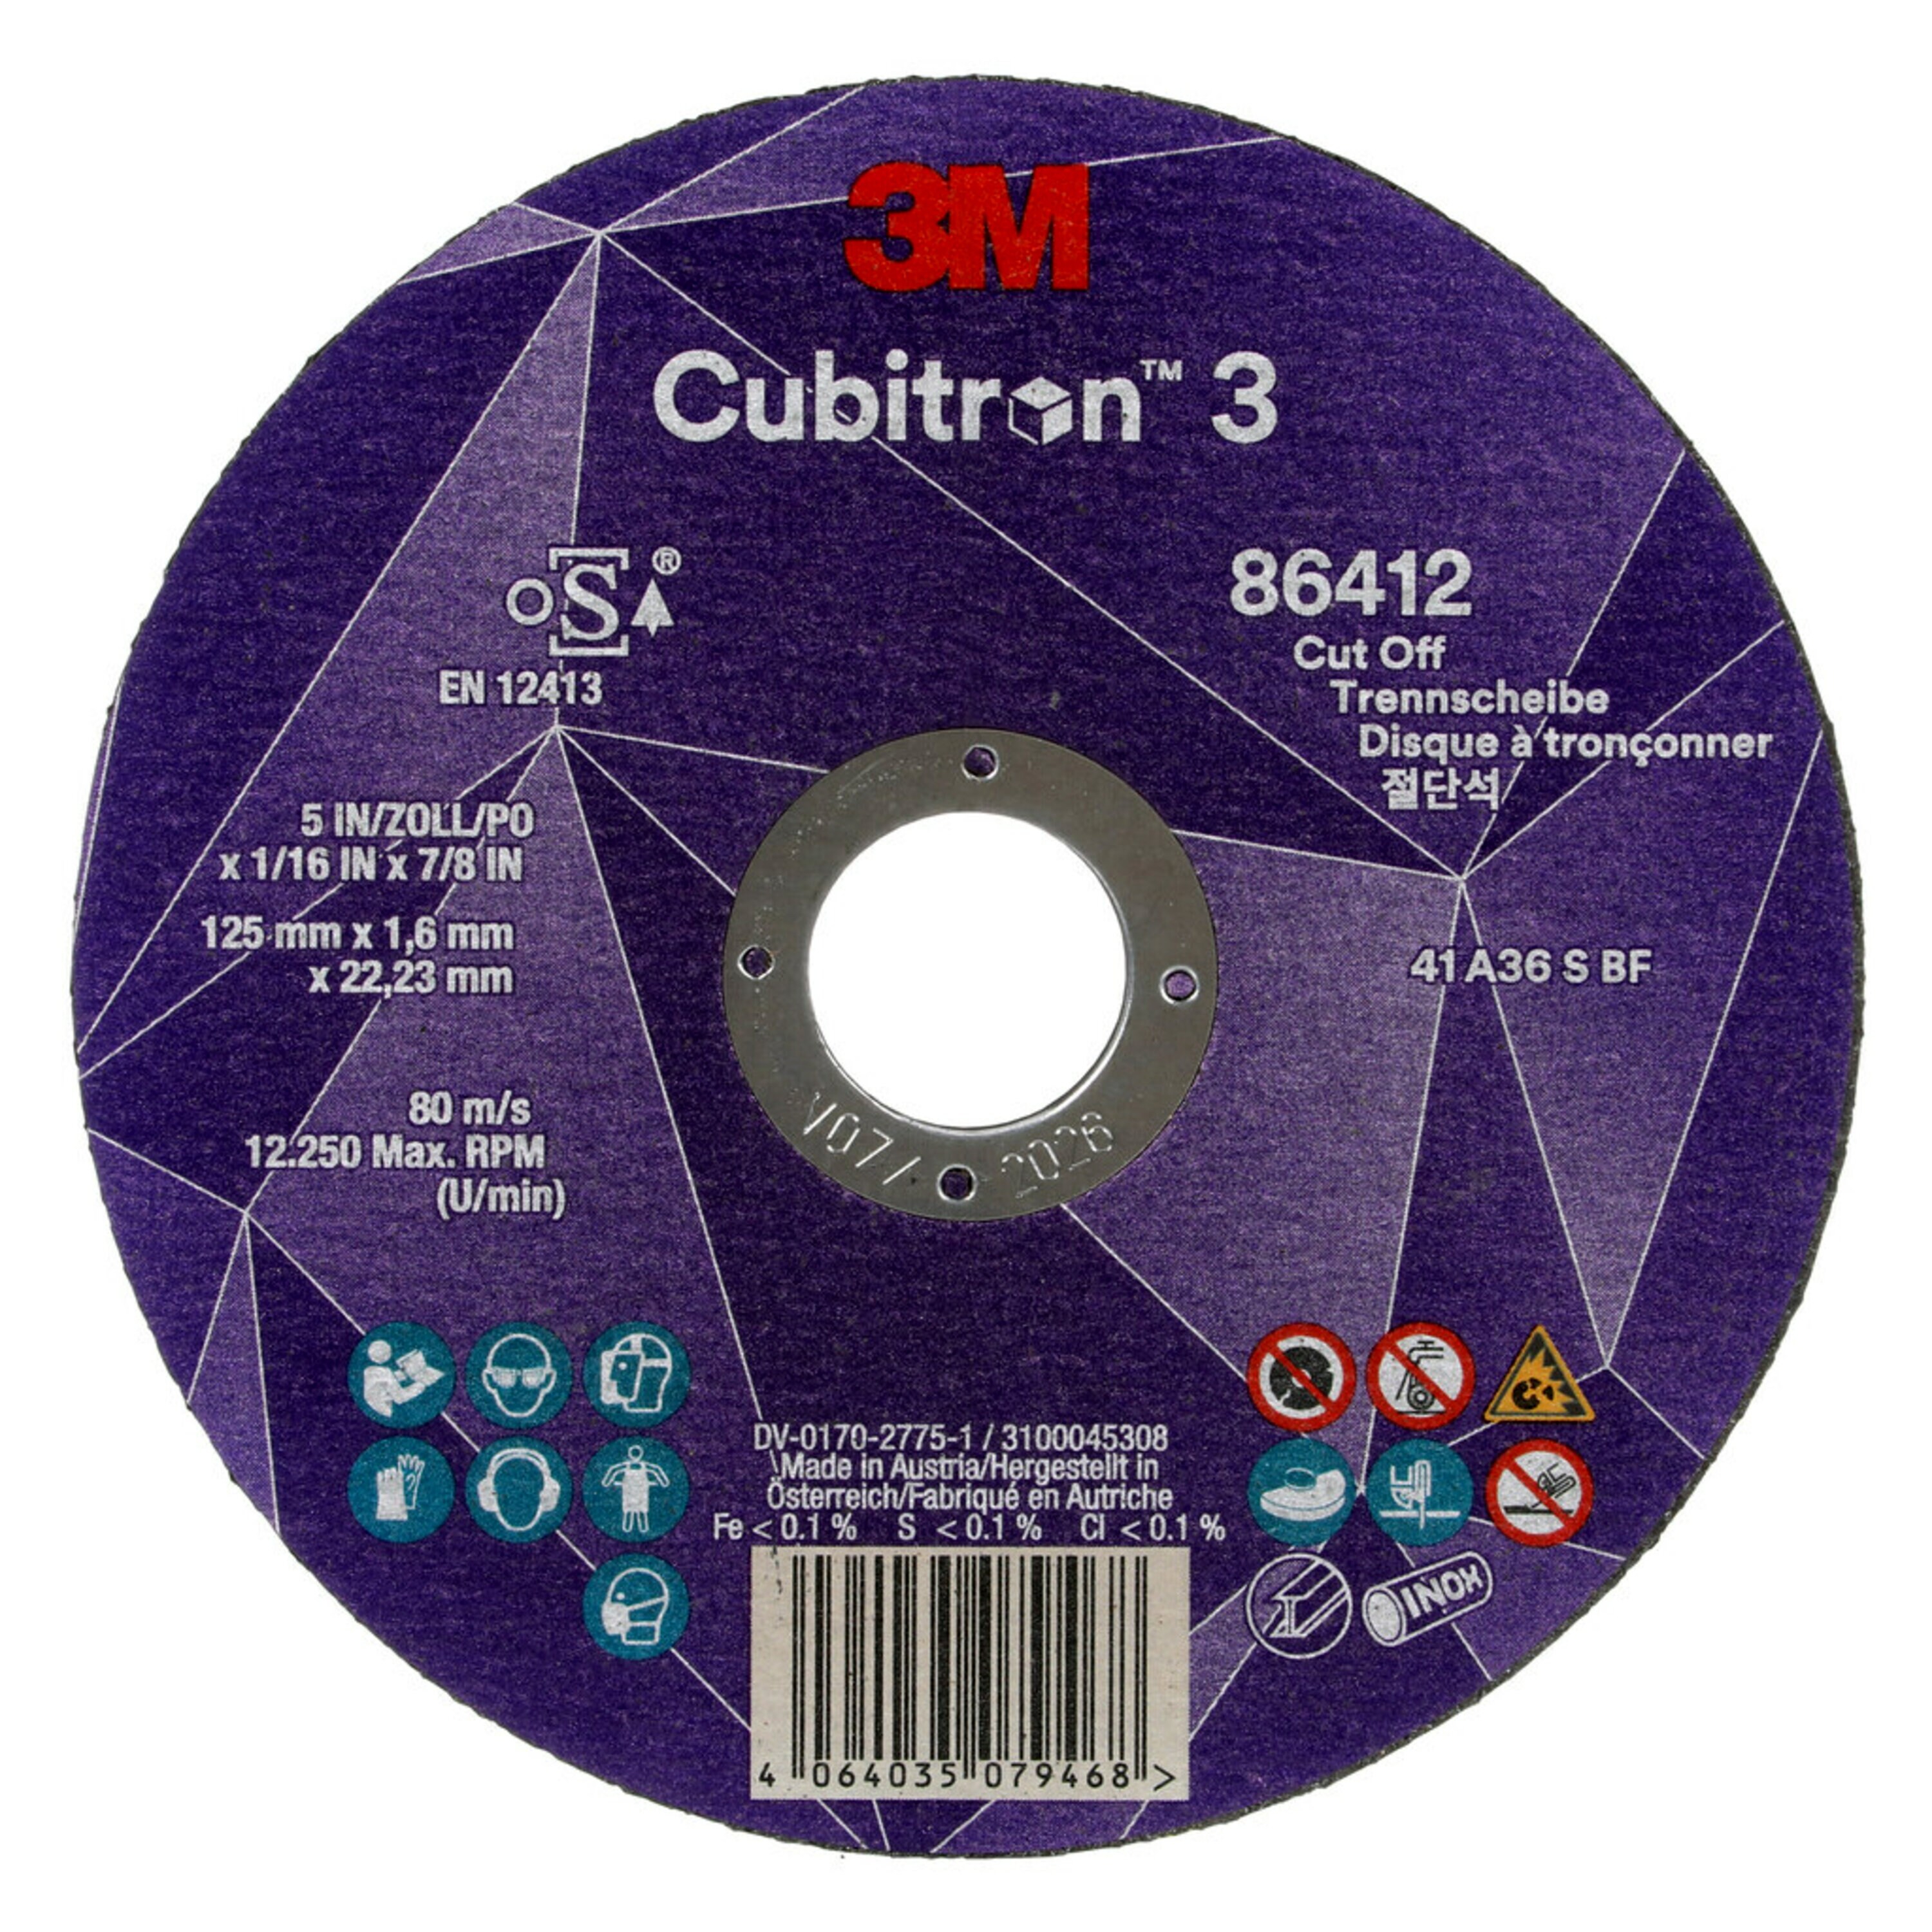 3M Cubitron 3 disco da taglio, 125 mm, 1,6 mm 22,23 mm, 36+, tipo 41 #86412